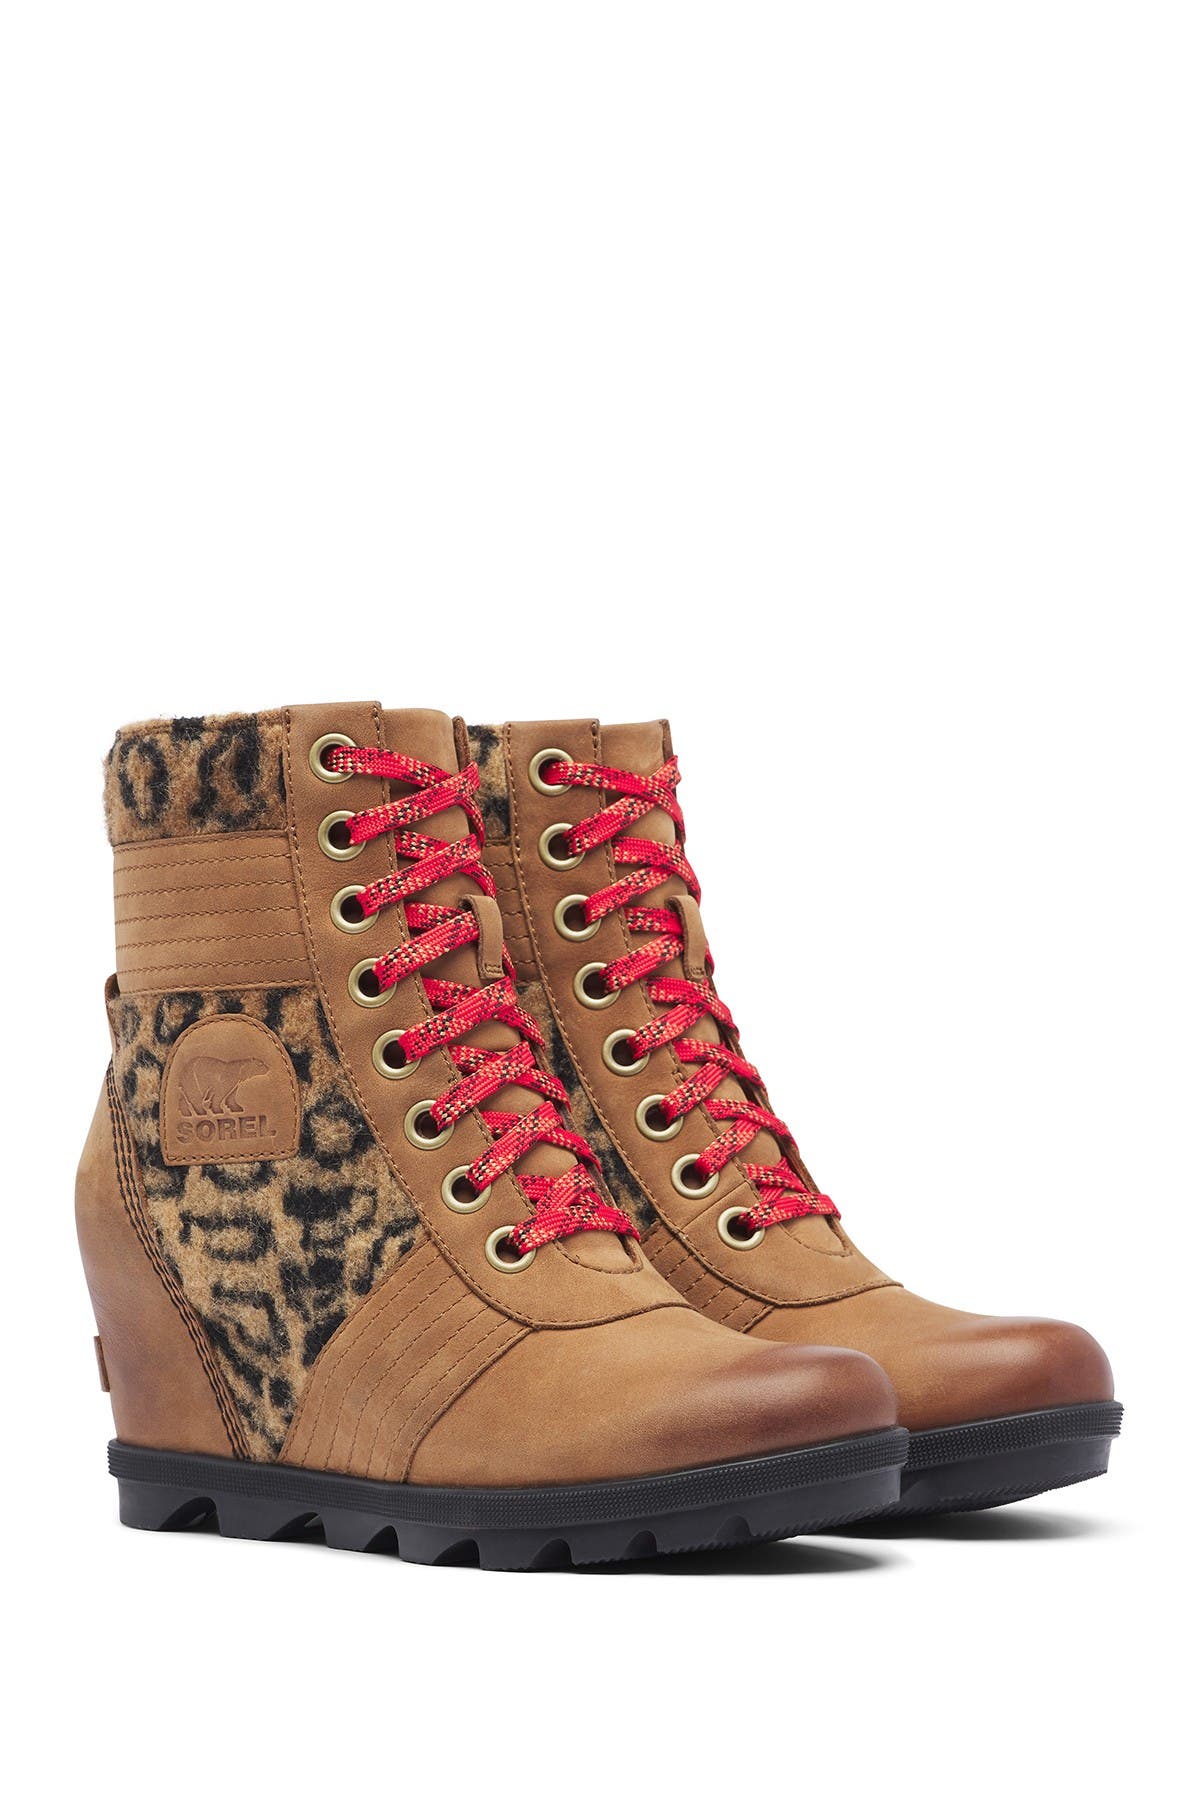 leopard sorel boots